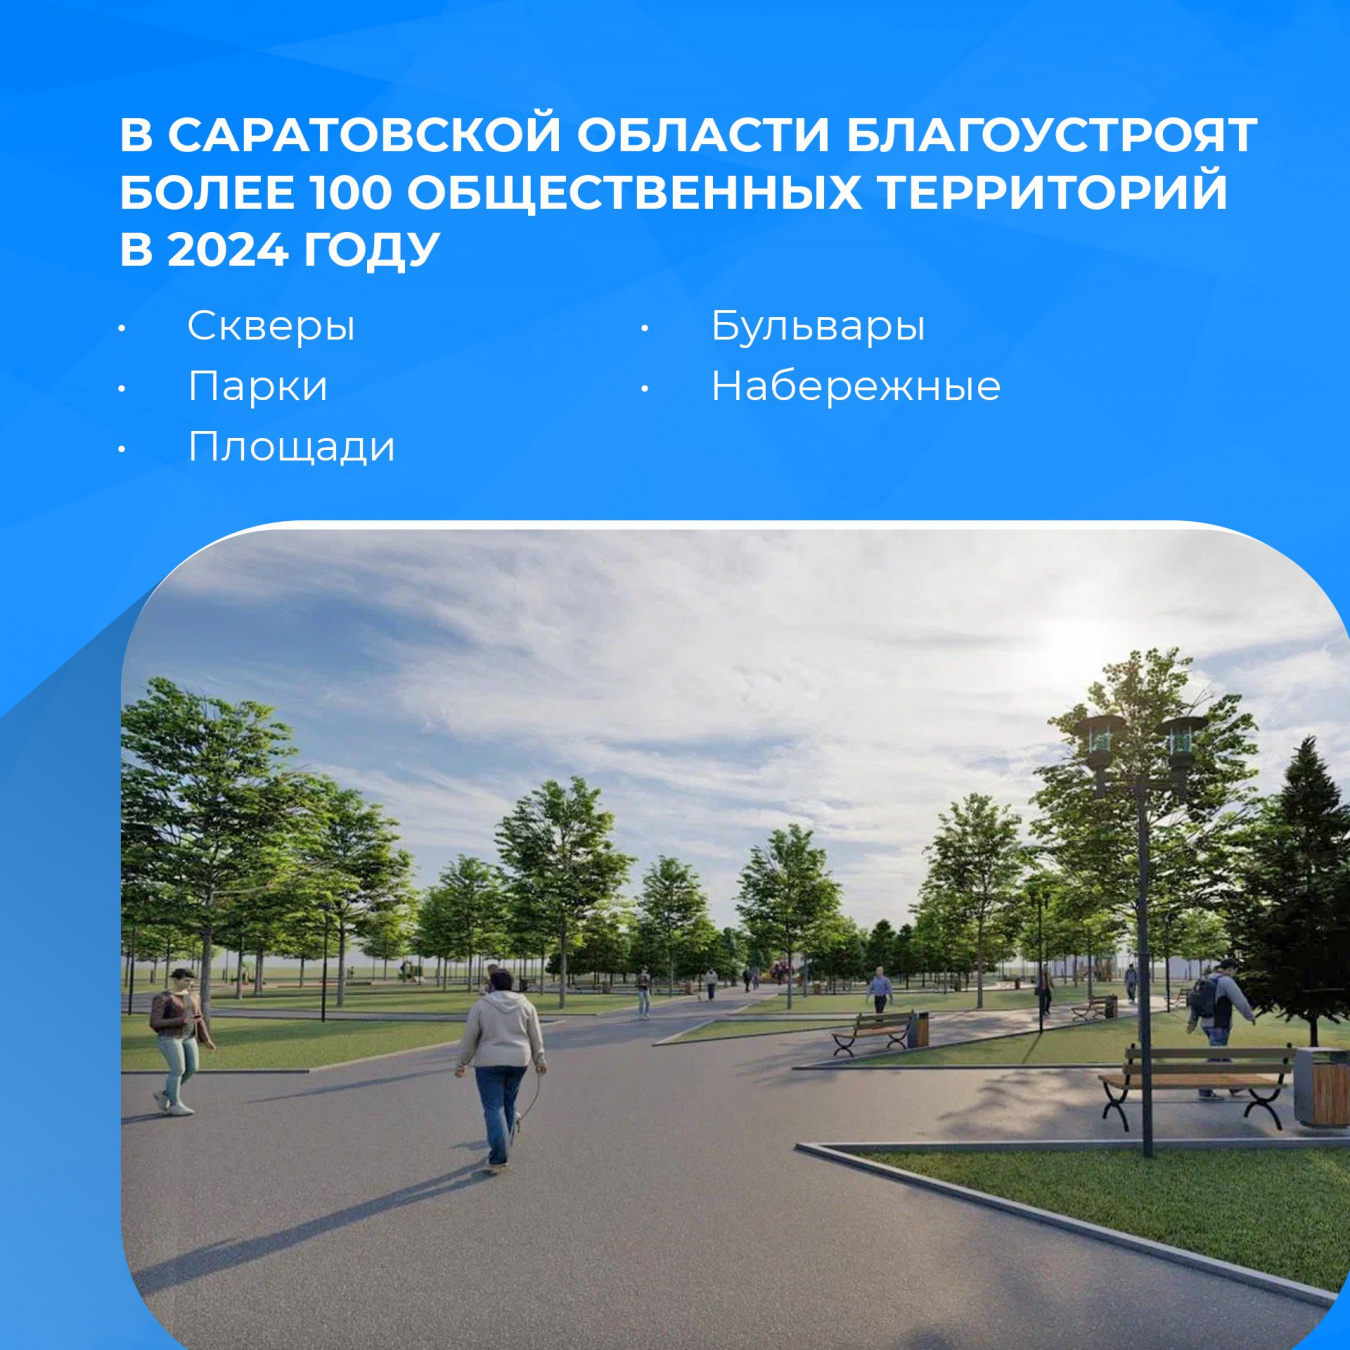 Владимир Путин сообщил о продлении конкурса лучших проектов городской среды до 2030 года